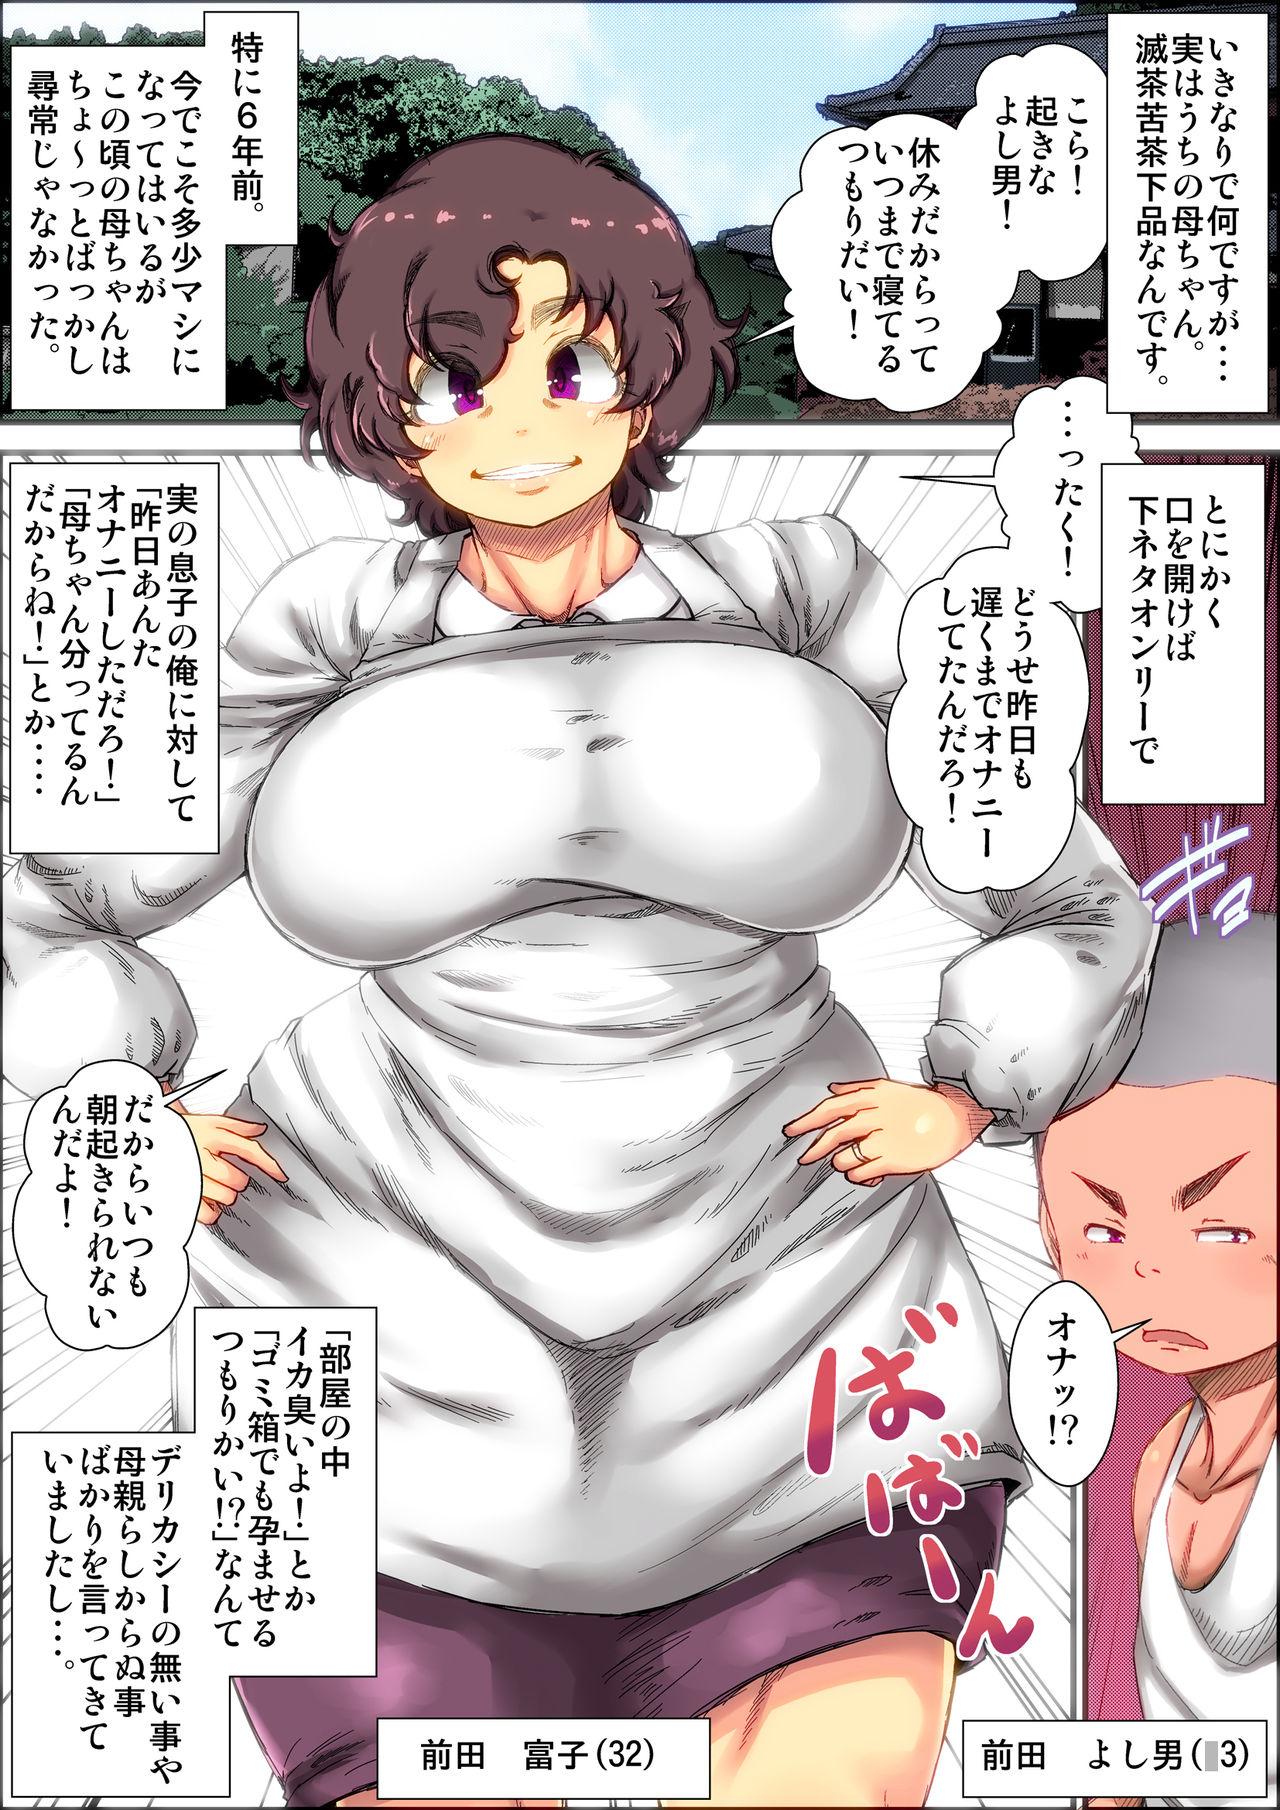 Gayfuck shimoshina de o sekkai na kimottama kaachan to ga chi ha me shi ta toki no wa。 - Original Breast - Page 2